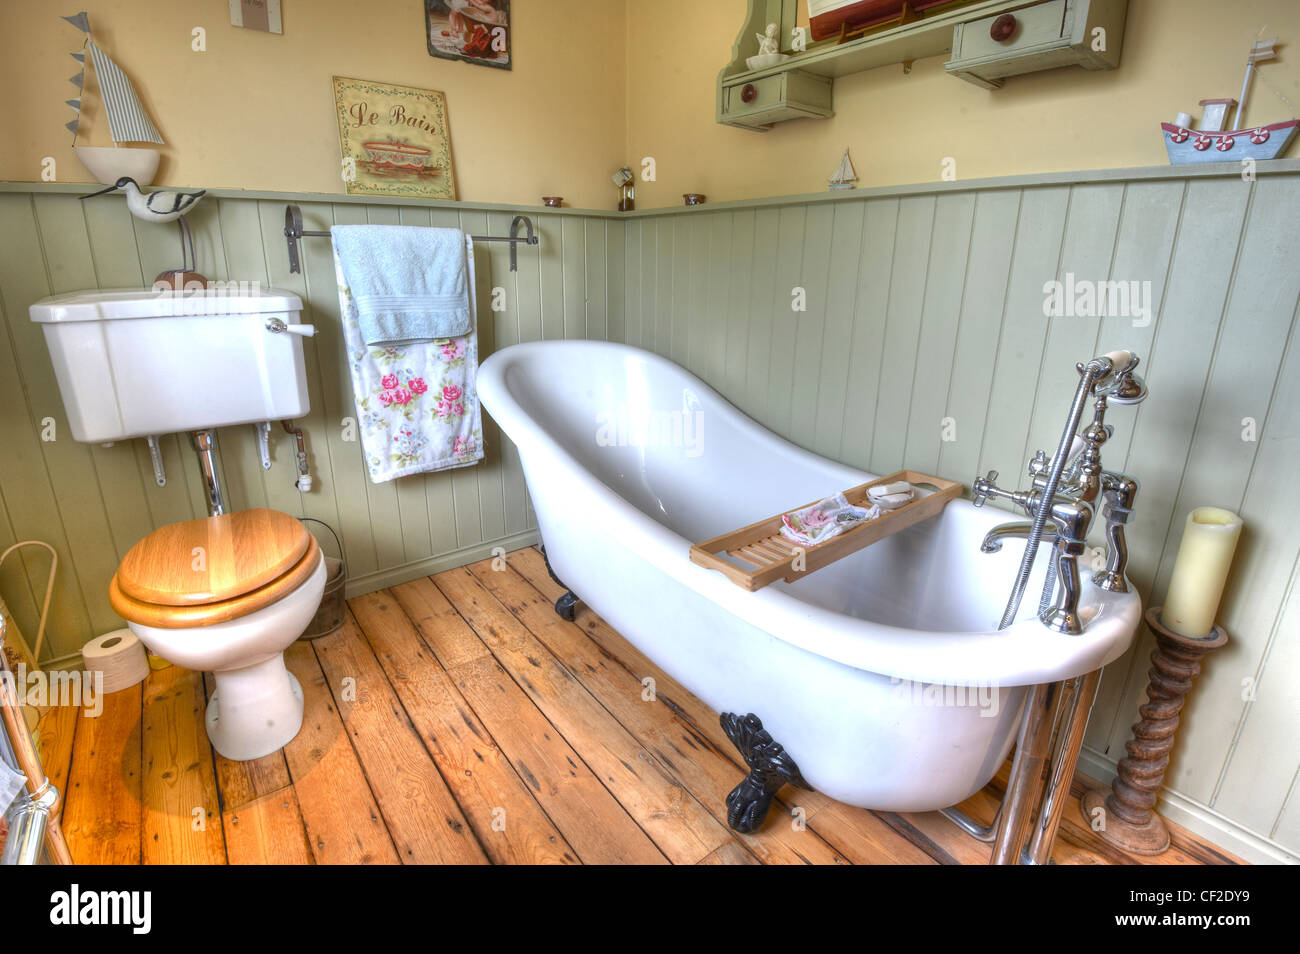 Un accogliente stile shaker bagno, con un roll-top vasca, basso livello di wc, ornamenti di legno su una barca in tema. Foto Stock